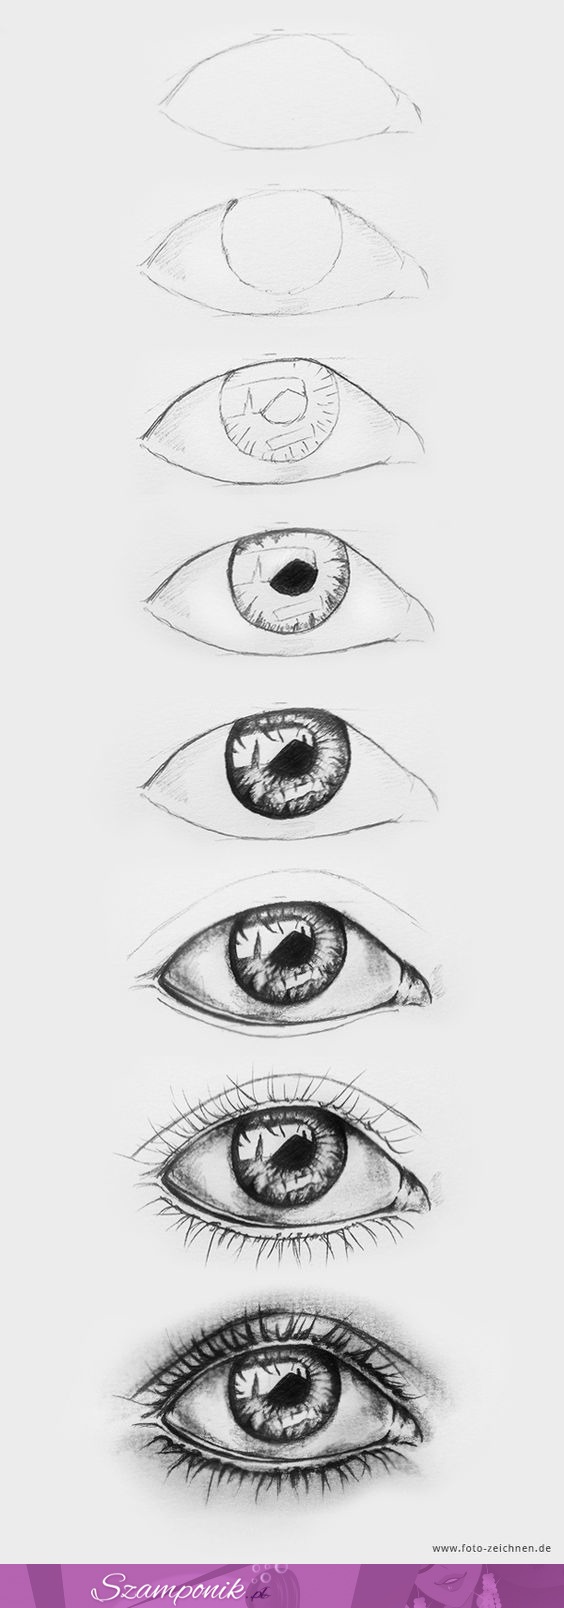 Chciałbys umieć narysować takie oko? Nic trudnego - oto kilka kroków jak to zrobić :)